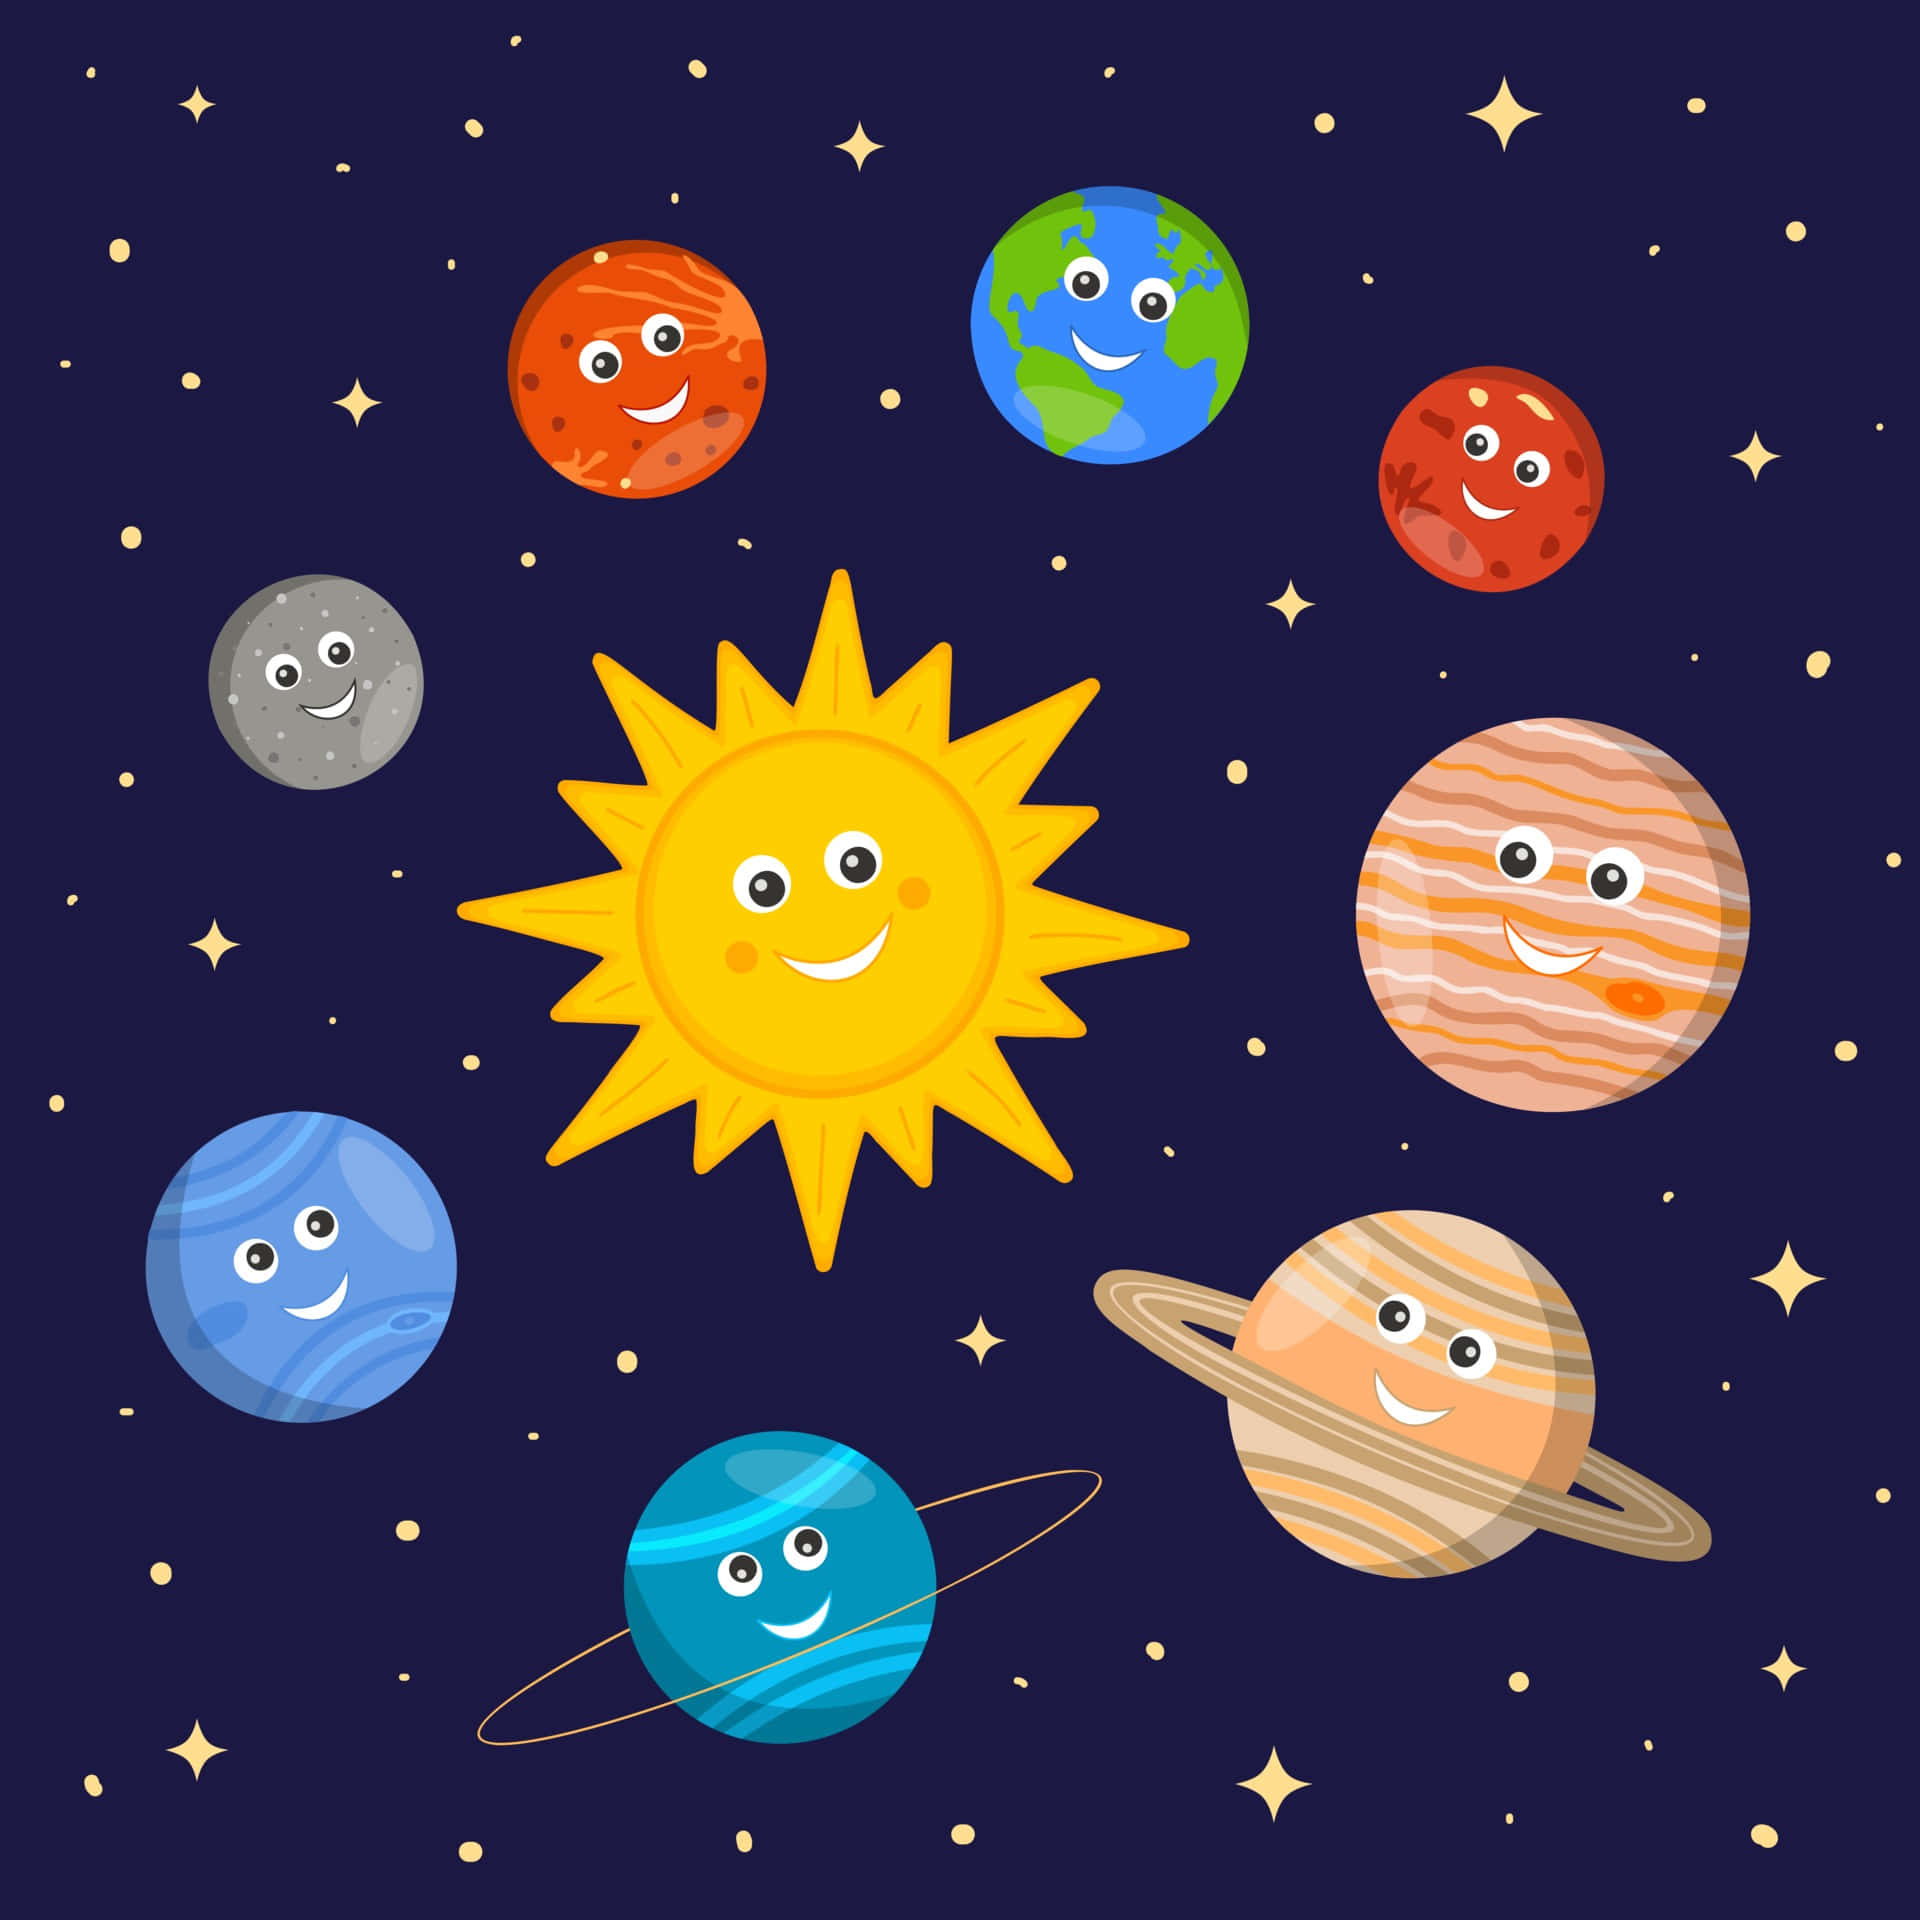 Tecknadeplaneter Och Sol I Solsystembild.